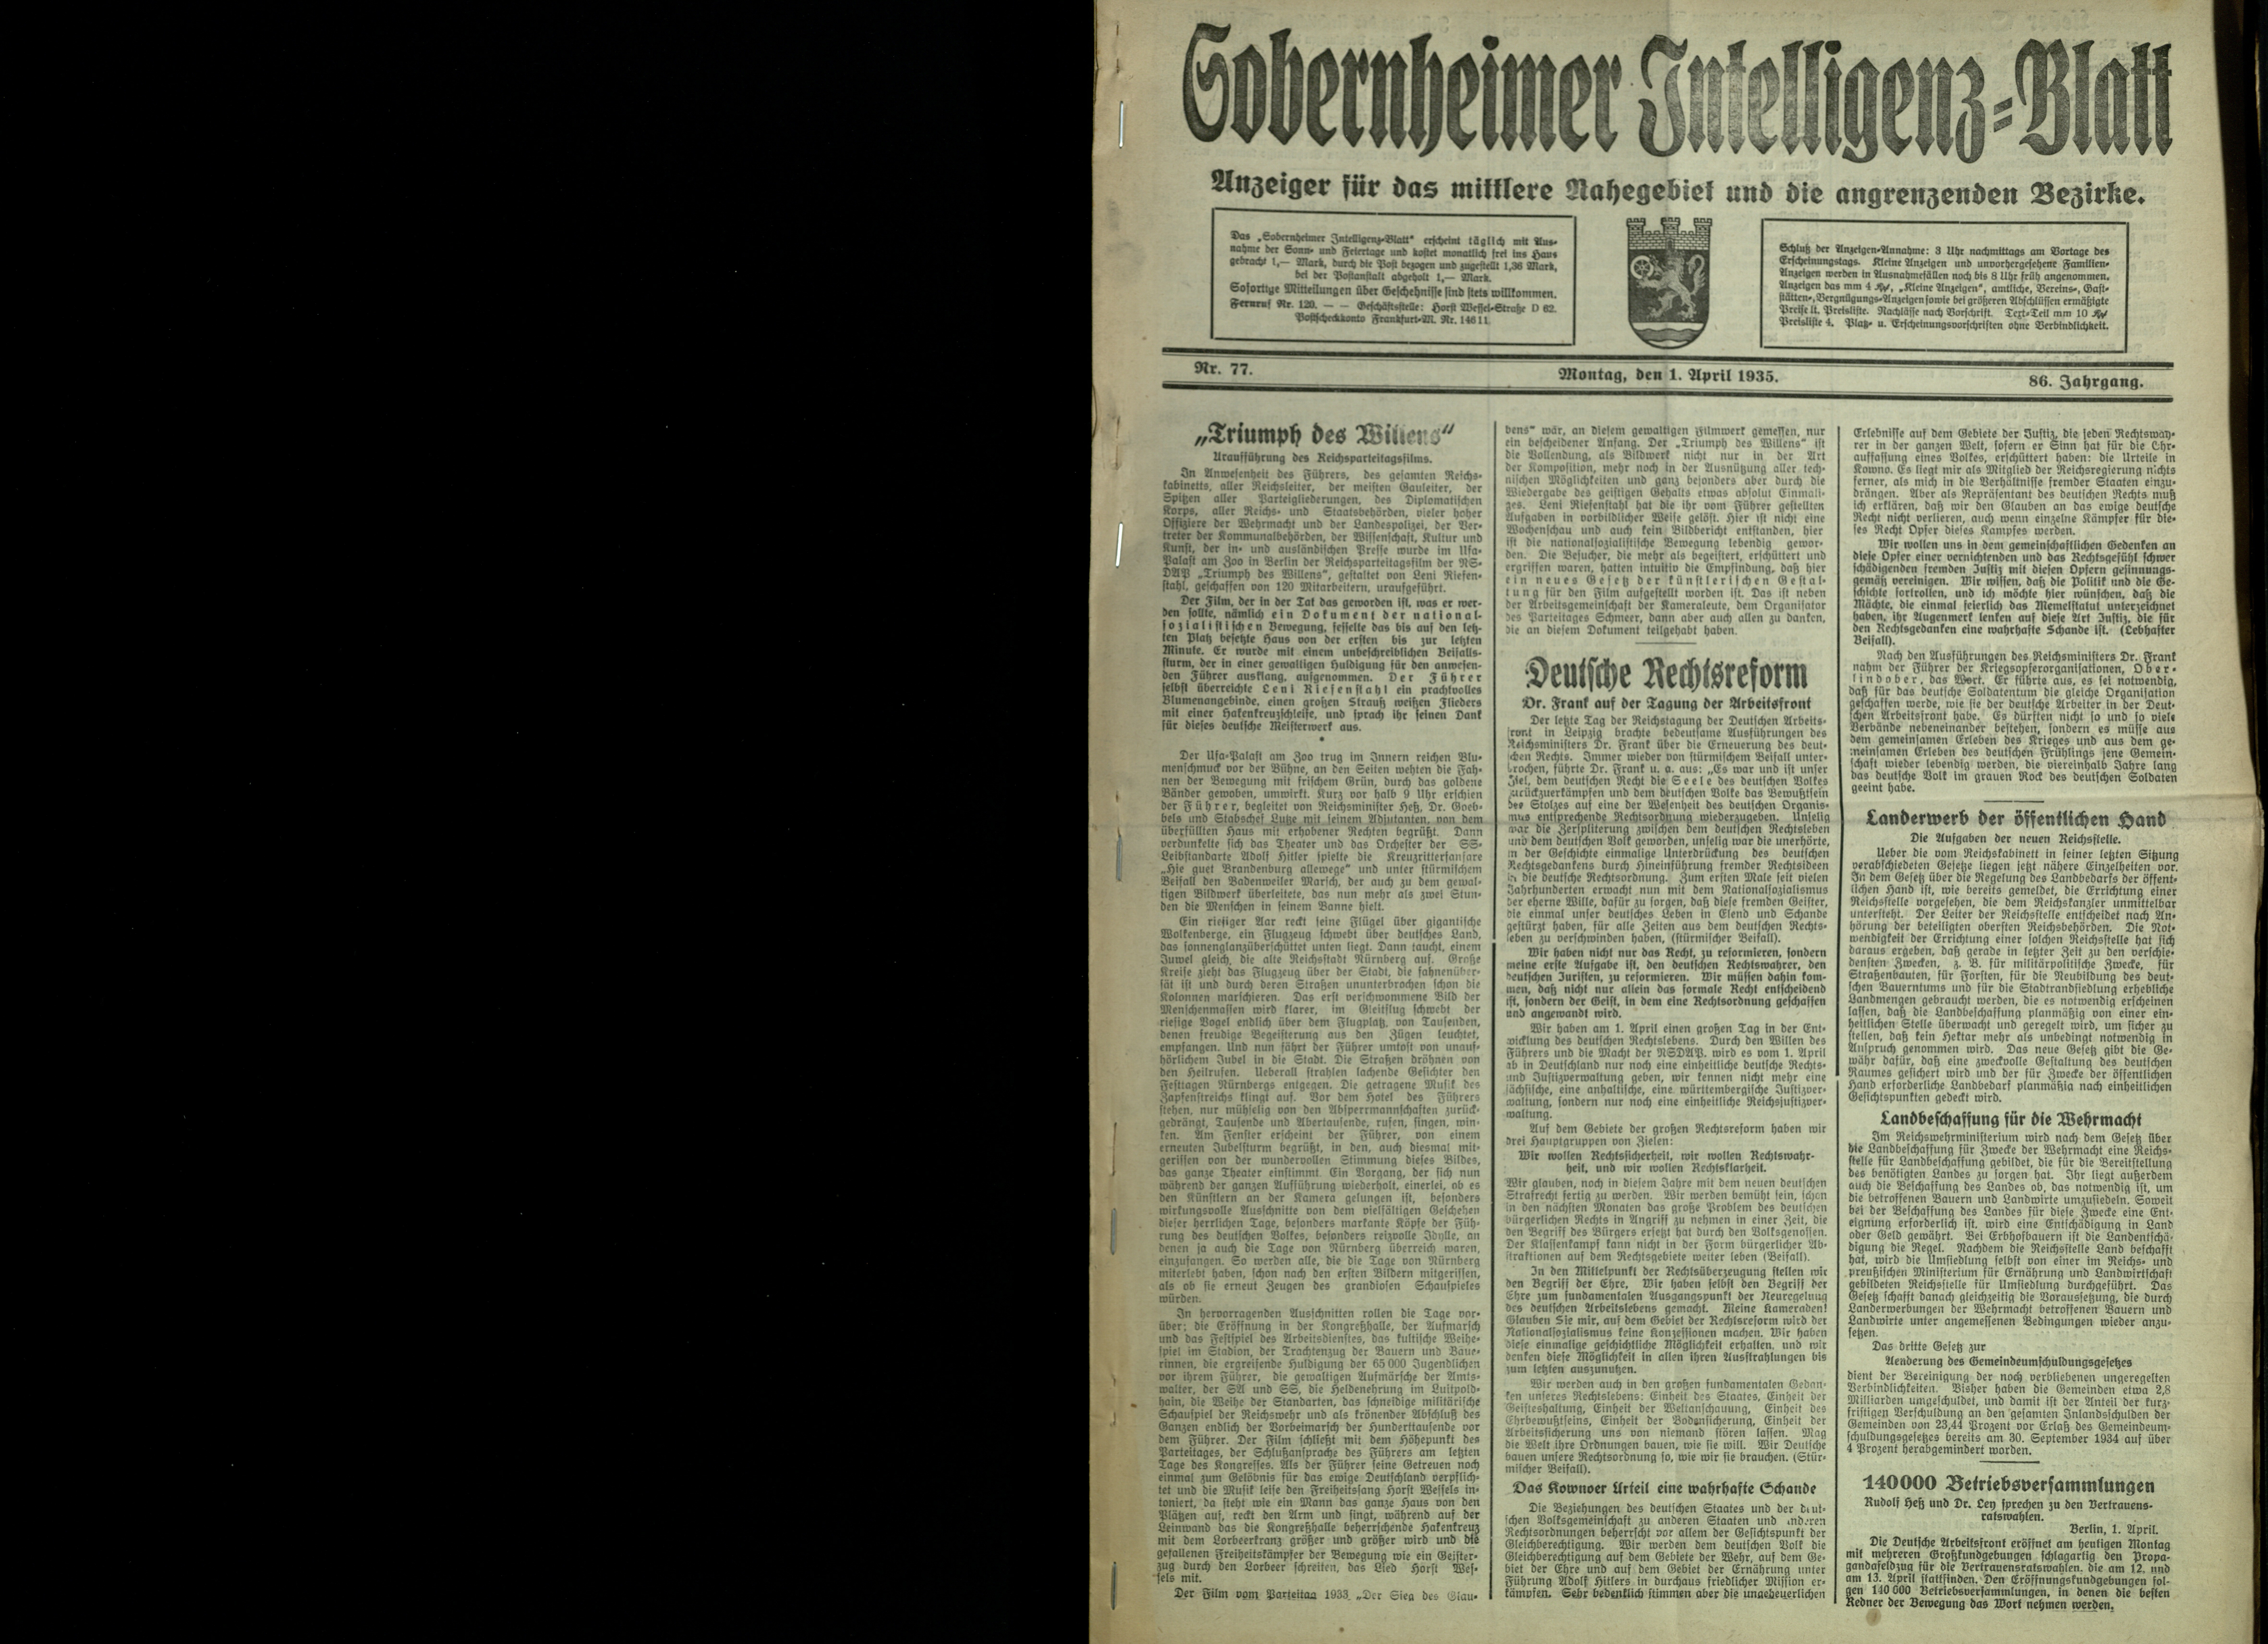 Zeitung: Sobernheimer Intelligenzblatt; April 1935, Jg. 86 Nr. 77 (Heimatmuseum Bad Sobernheim CC BY-NC-SA)